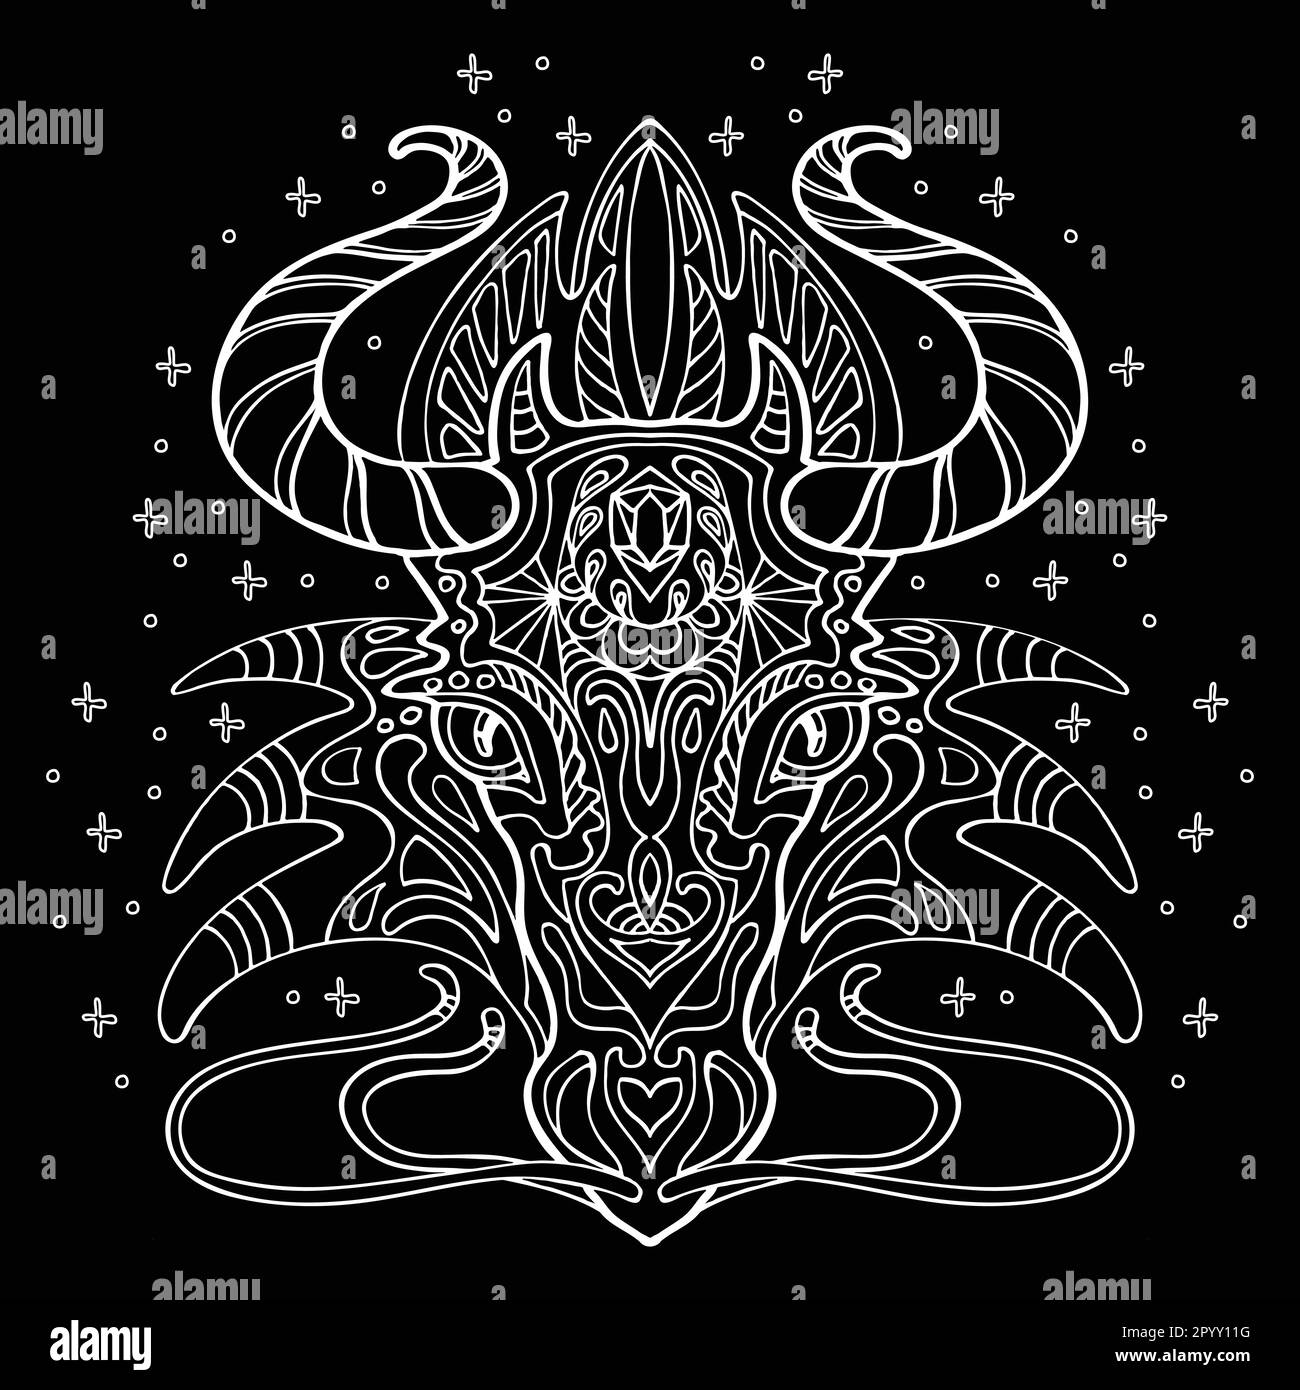 Vettore decorativo doodle drago ornamentale. Astratto vettore illustrazione testa di Dragon bianco contorno isolato su sfondo nero. Illustrazione di un Illustrazione Vettoriale